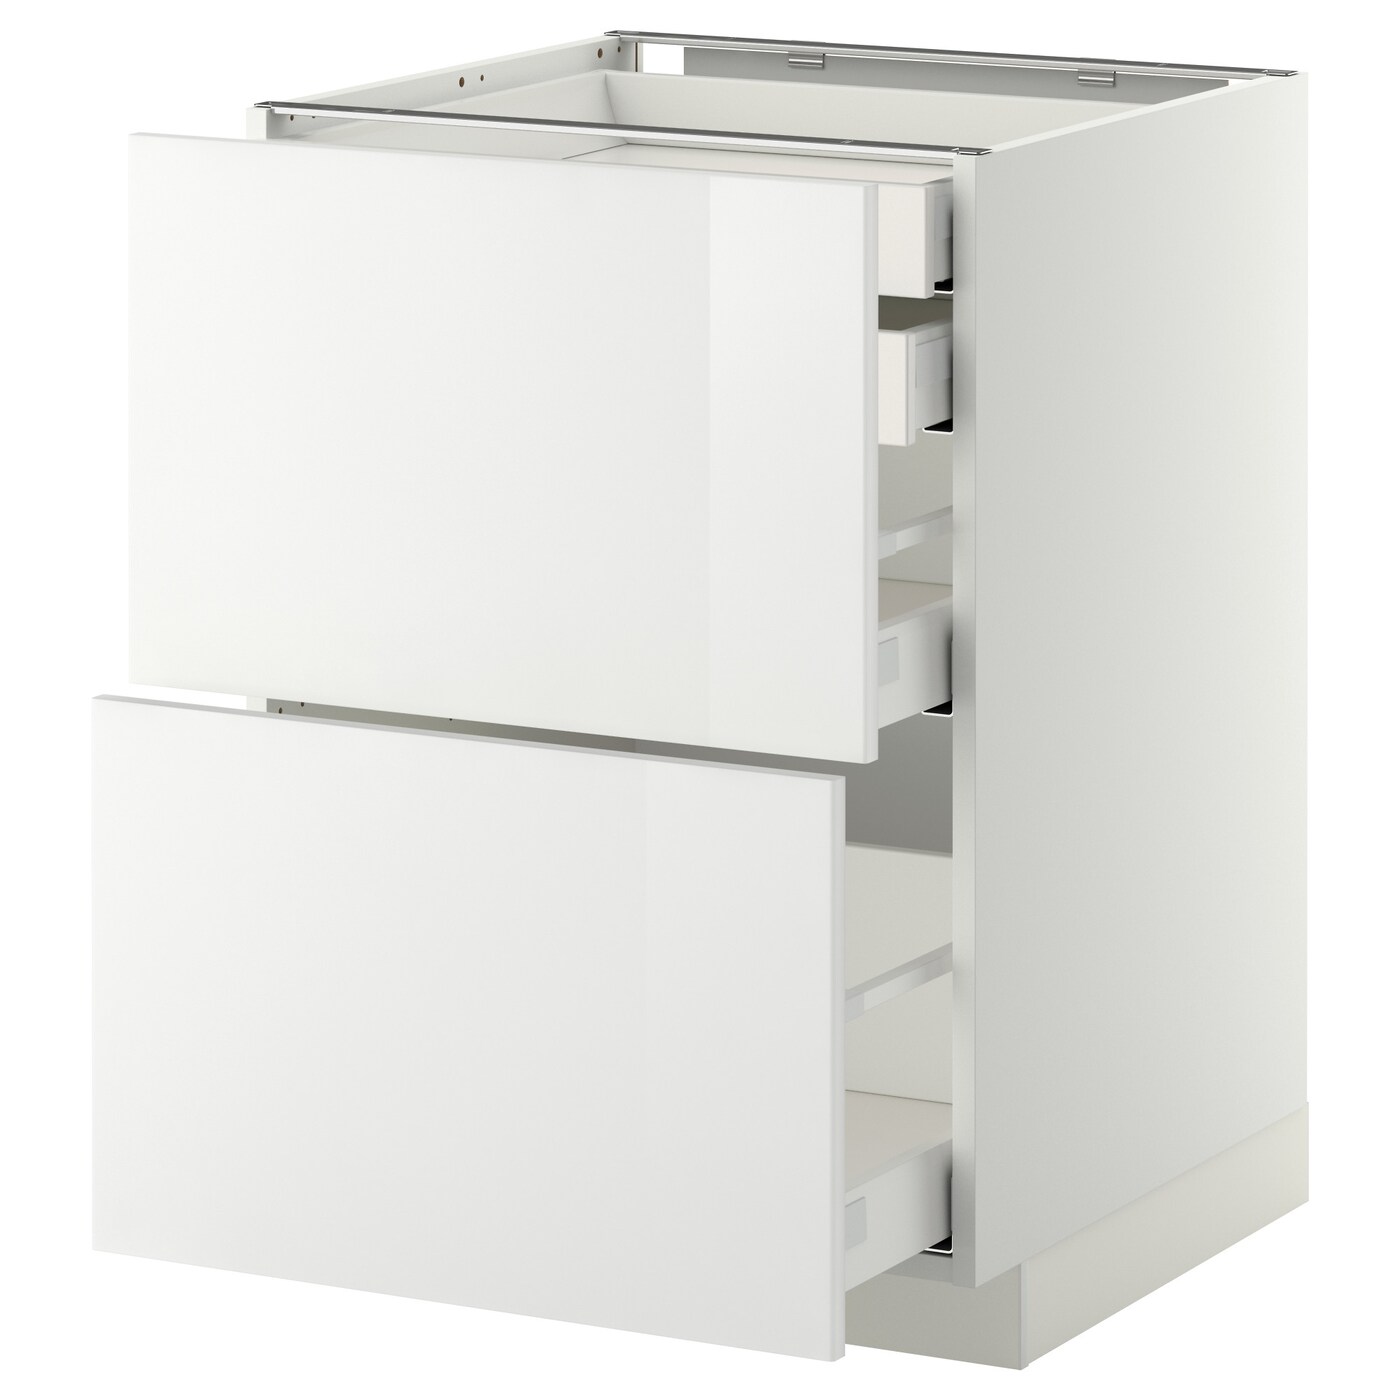 Напольный шкаф  - IKEA METOD MAXIMERA, 88x61,8x60см, белый, МЕТОД МАКСИМЕРА ИКЕА